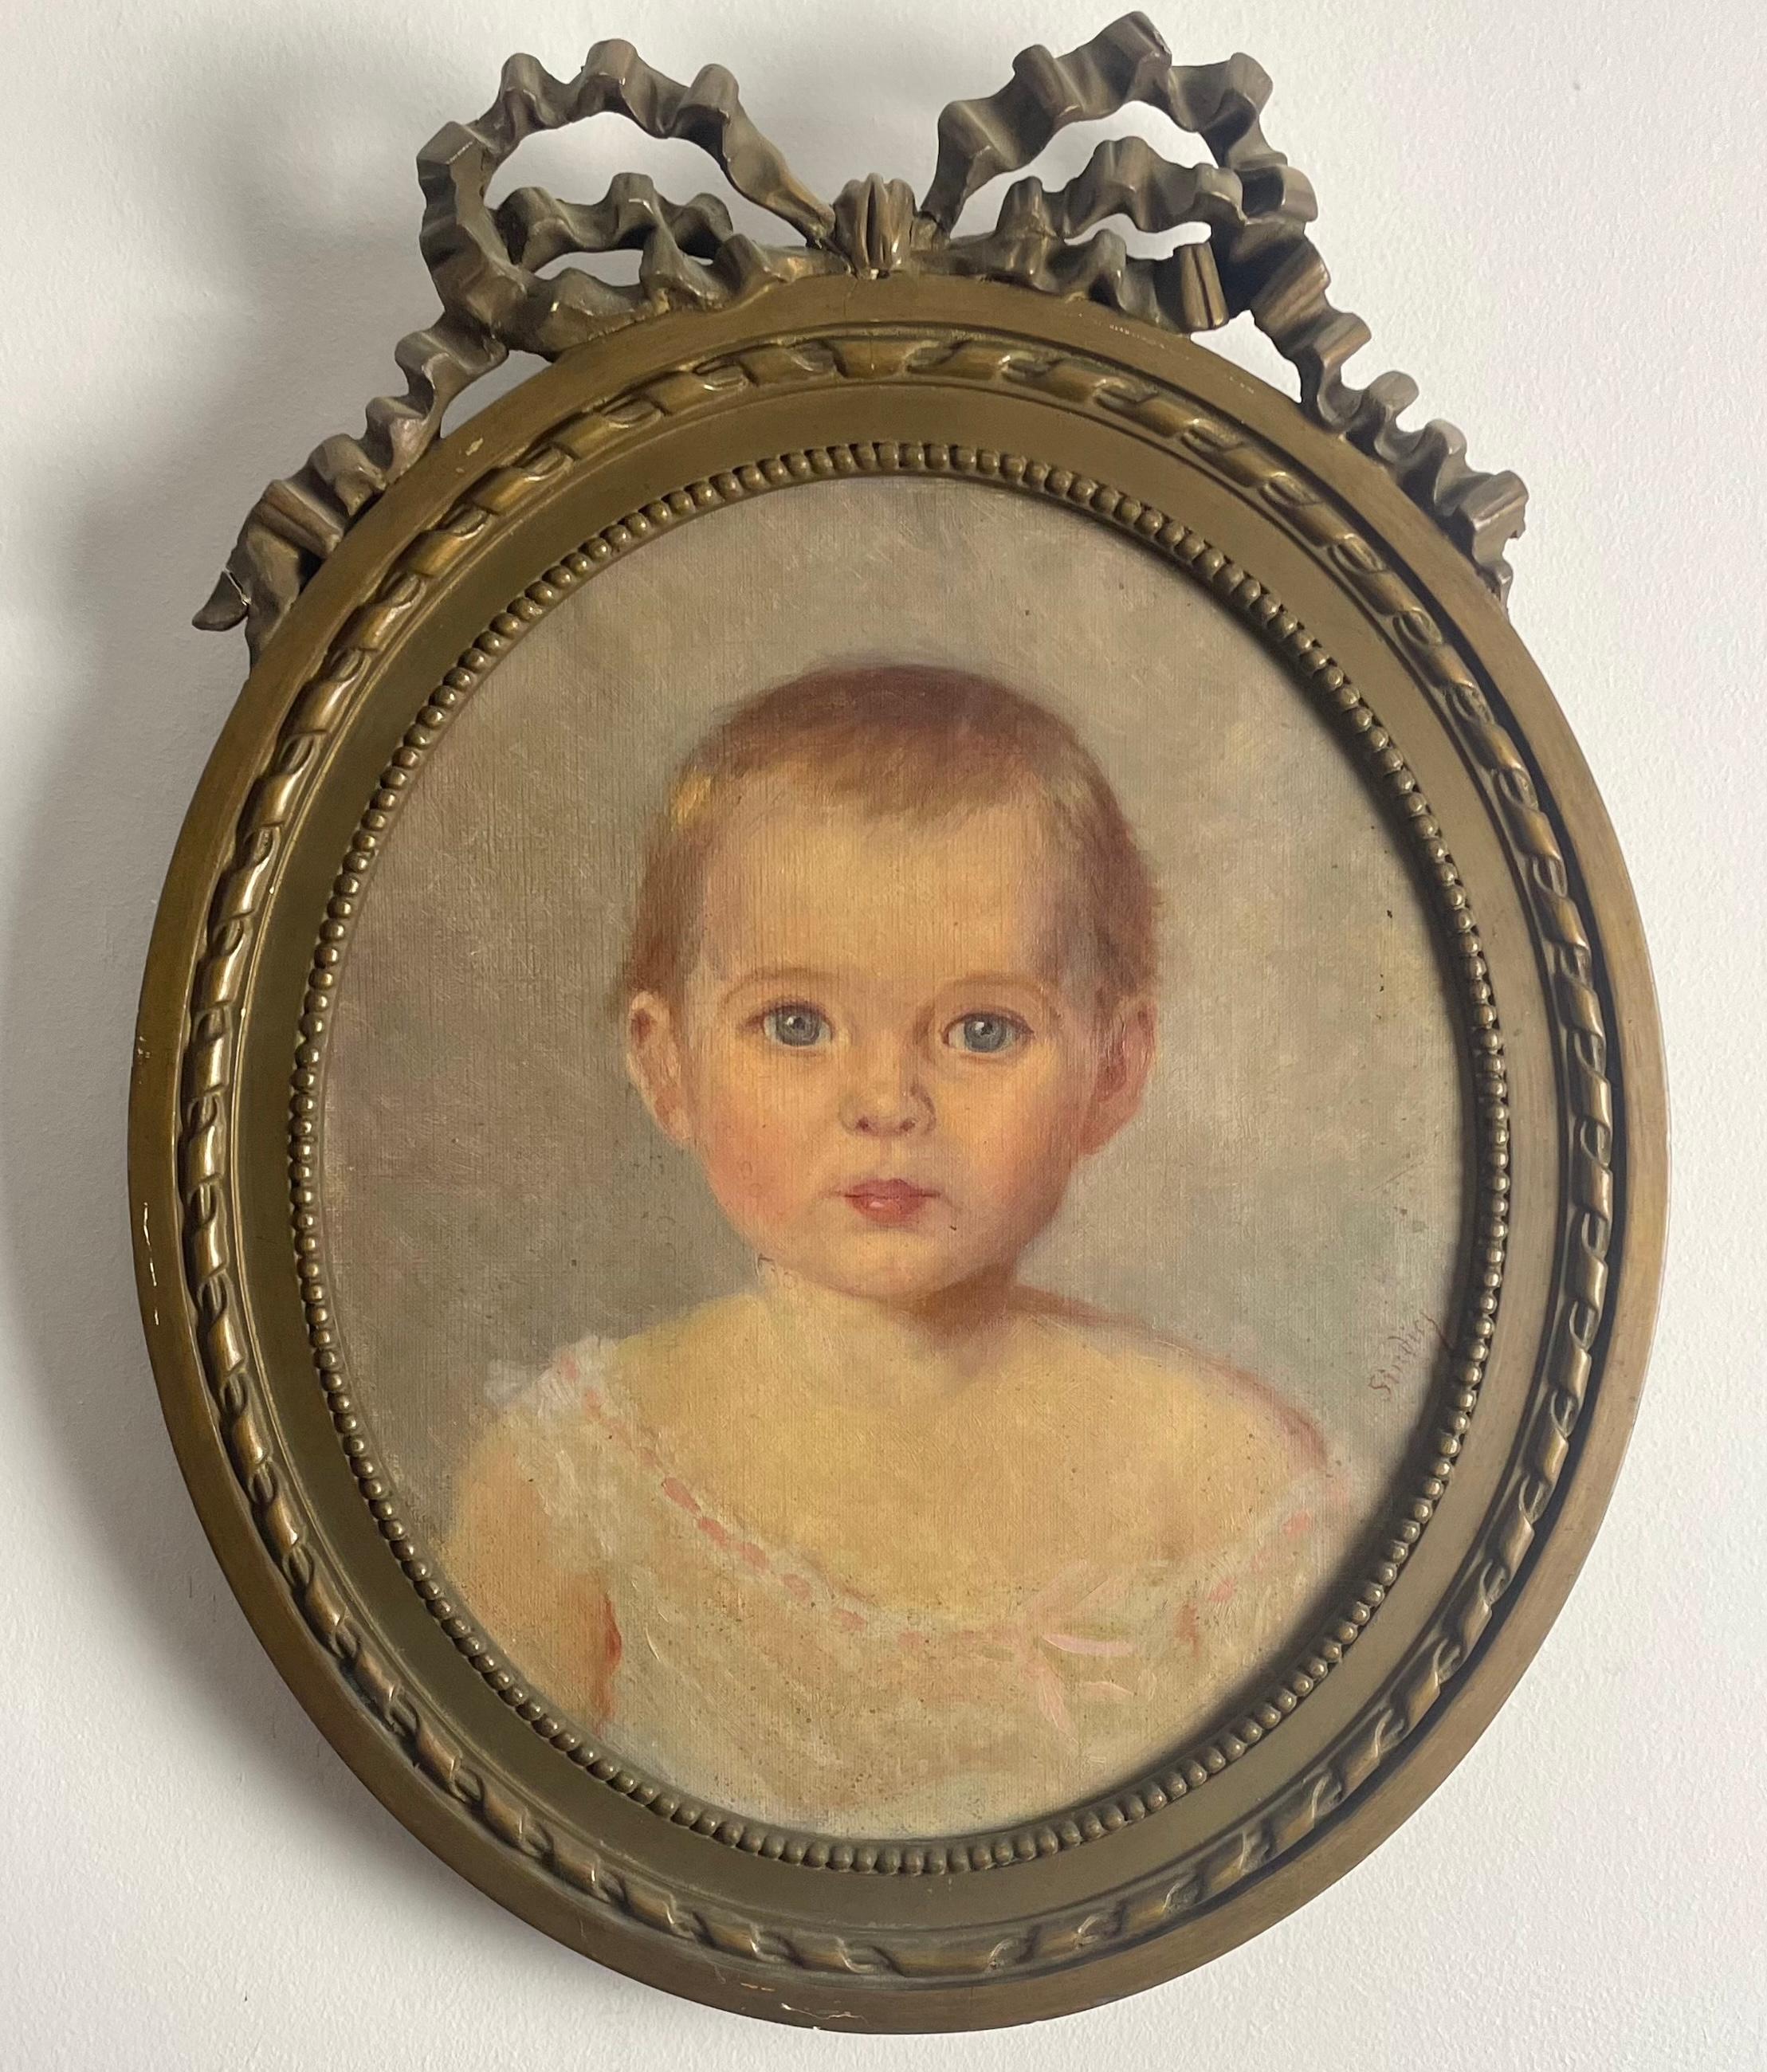 Hübsches Porträt eines Babys / Kleinkindes aus dem Ende des 19. Jahrhunderts.
Schöne Qualität der Ausführung;
Das Gesicht des Kindes ist sehr fein und angenehm. Das Thema wird gut behandelt.
Das Gemälde ist signiert.
Das Porträt wird durch einen